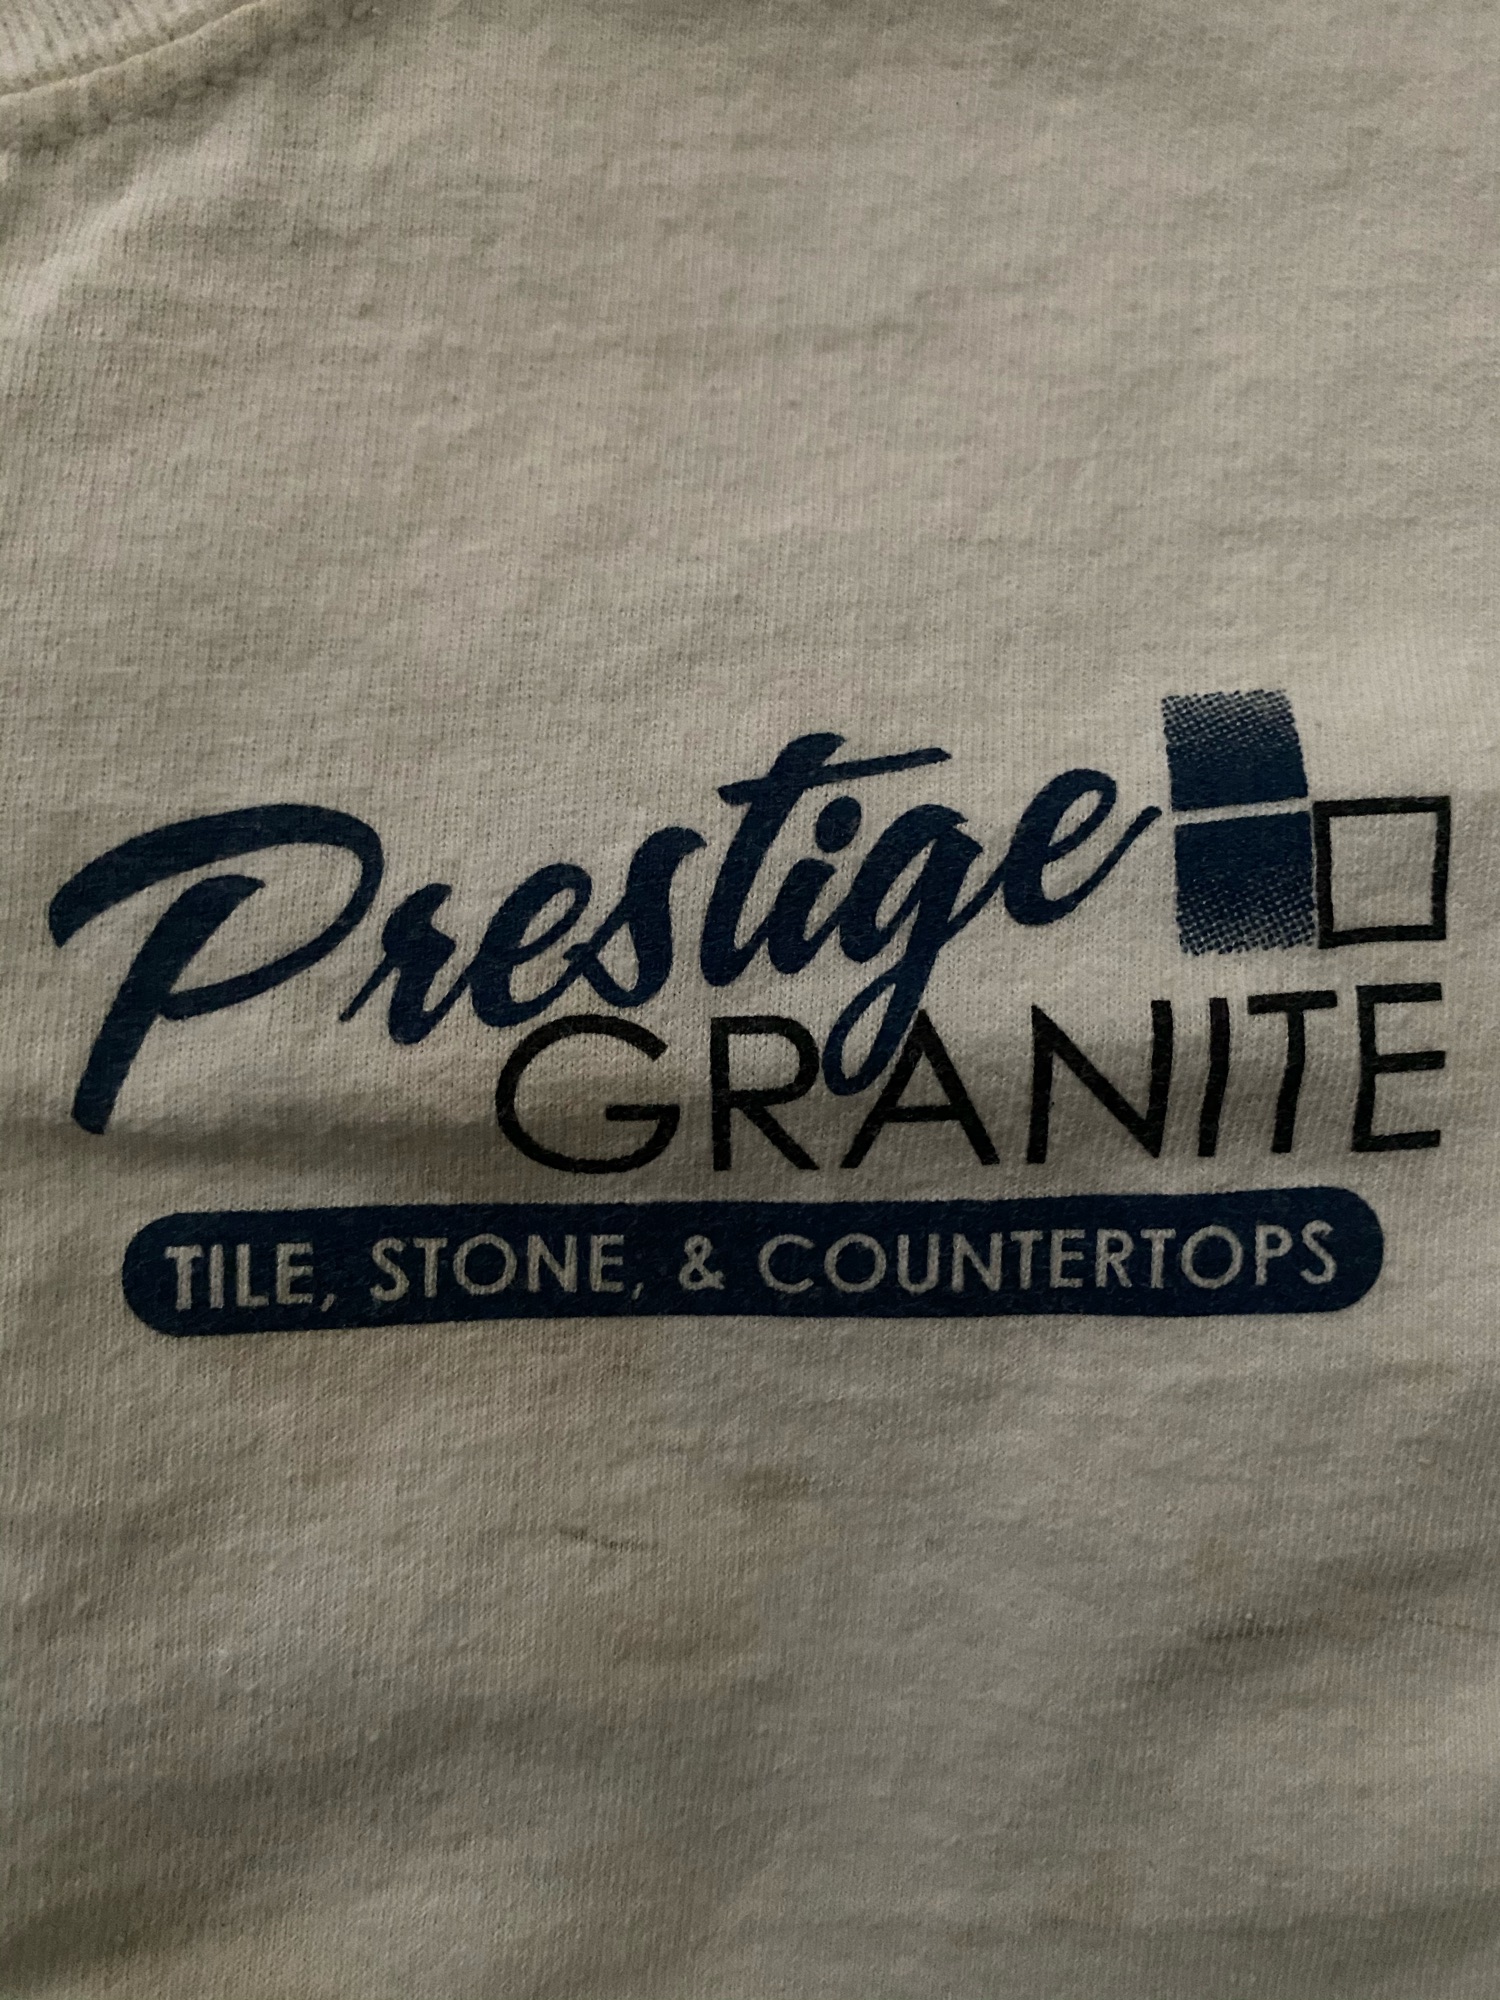 Prestige Granite Logo